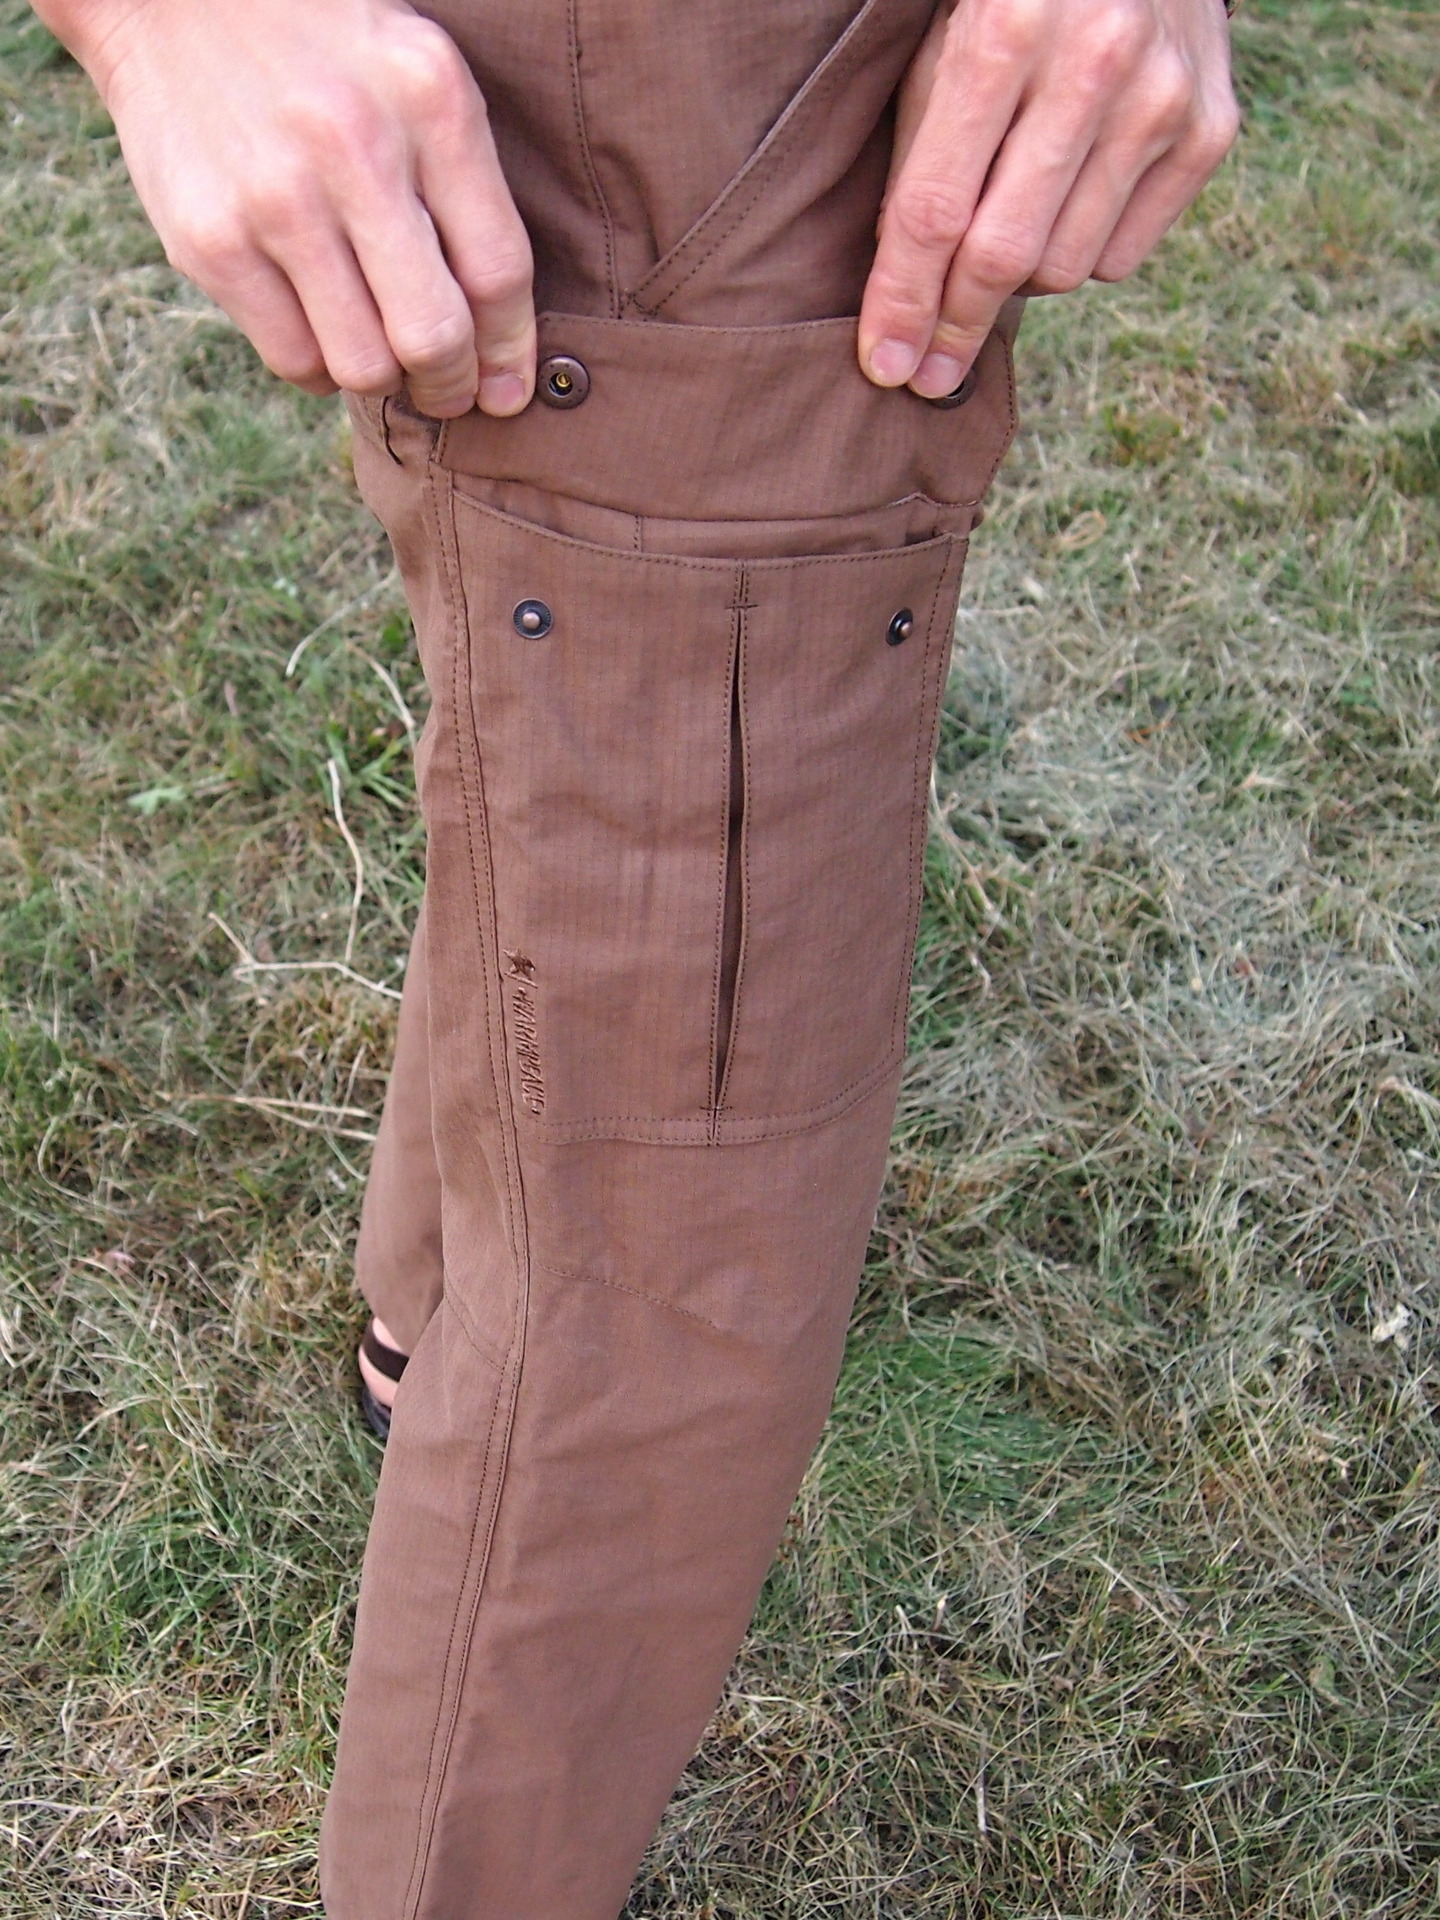 Pánské kalhoty Warmpeace Galt. Na obou stehnech je velká kapsa na druky.